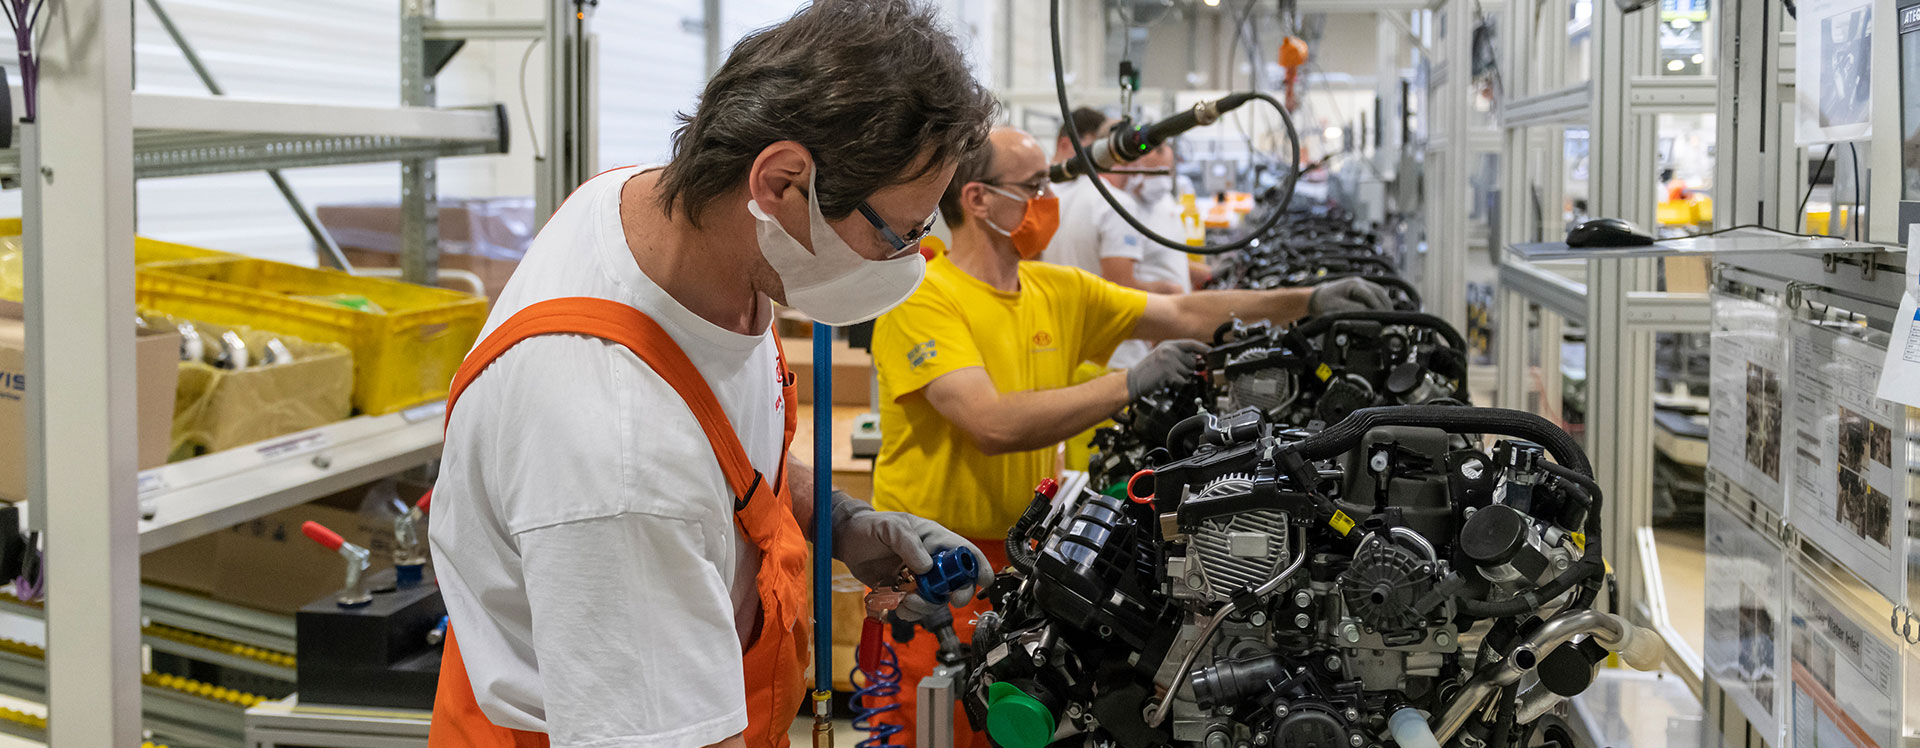 Η Kia επενδύει 70 εκατομμύρια ευρώ στην παραγωγή κινητήρων στην Ευρώπη